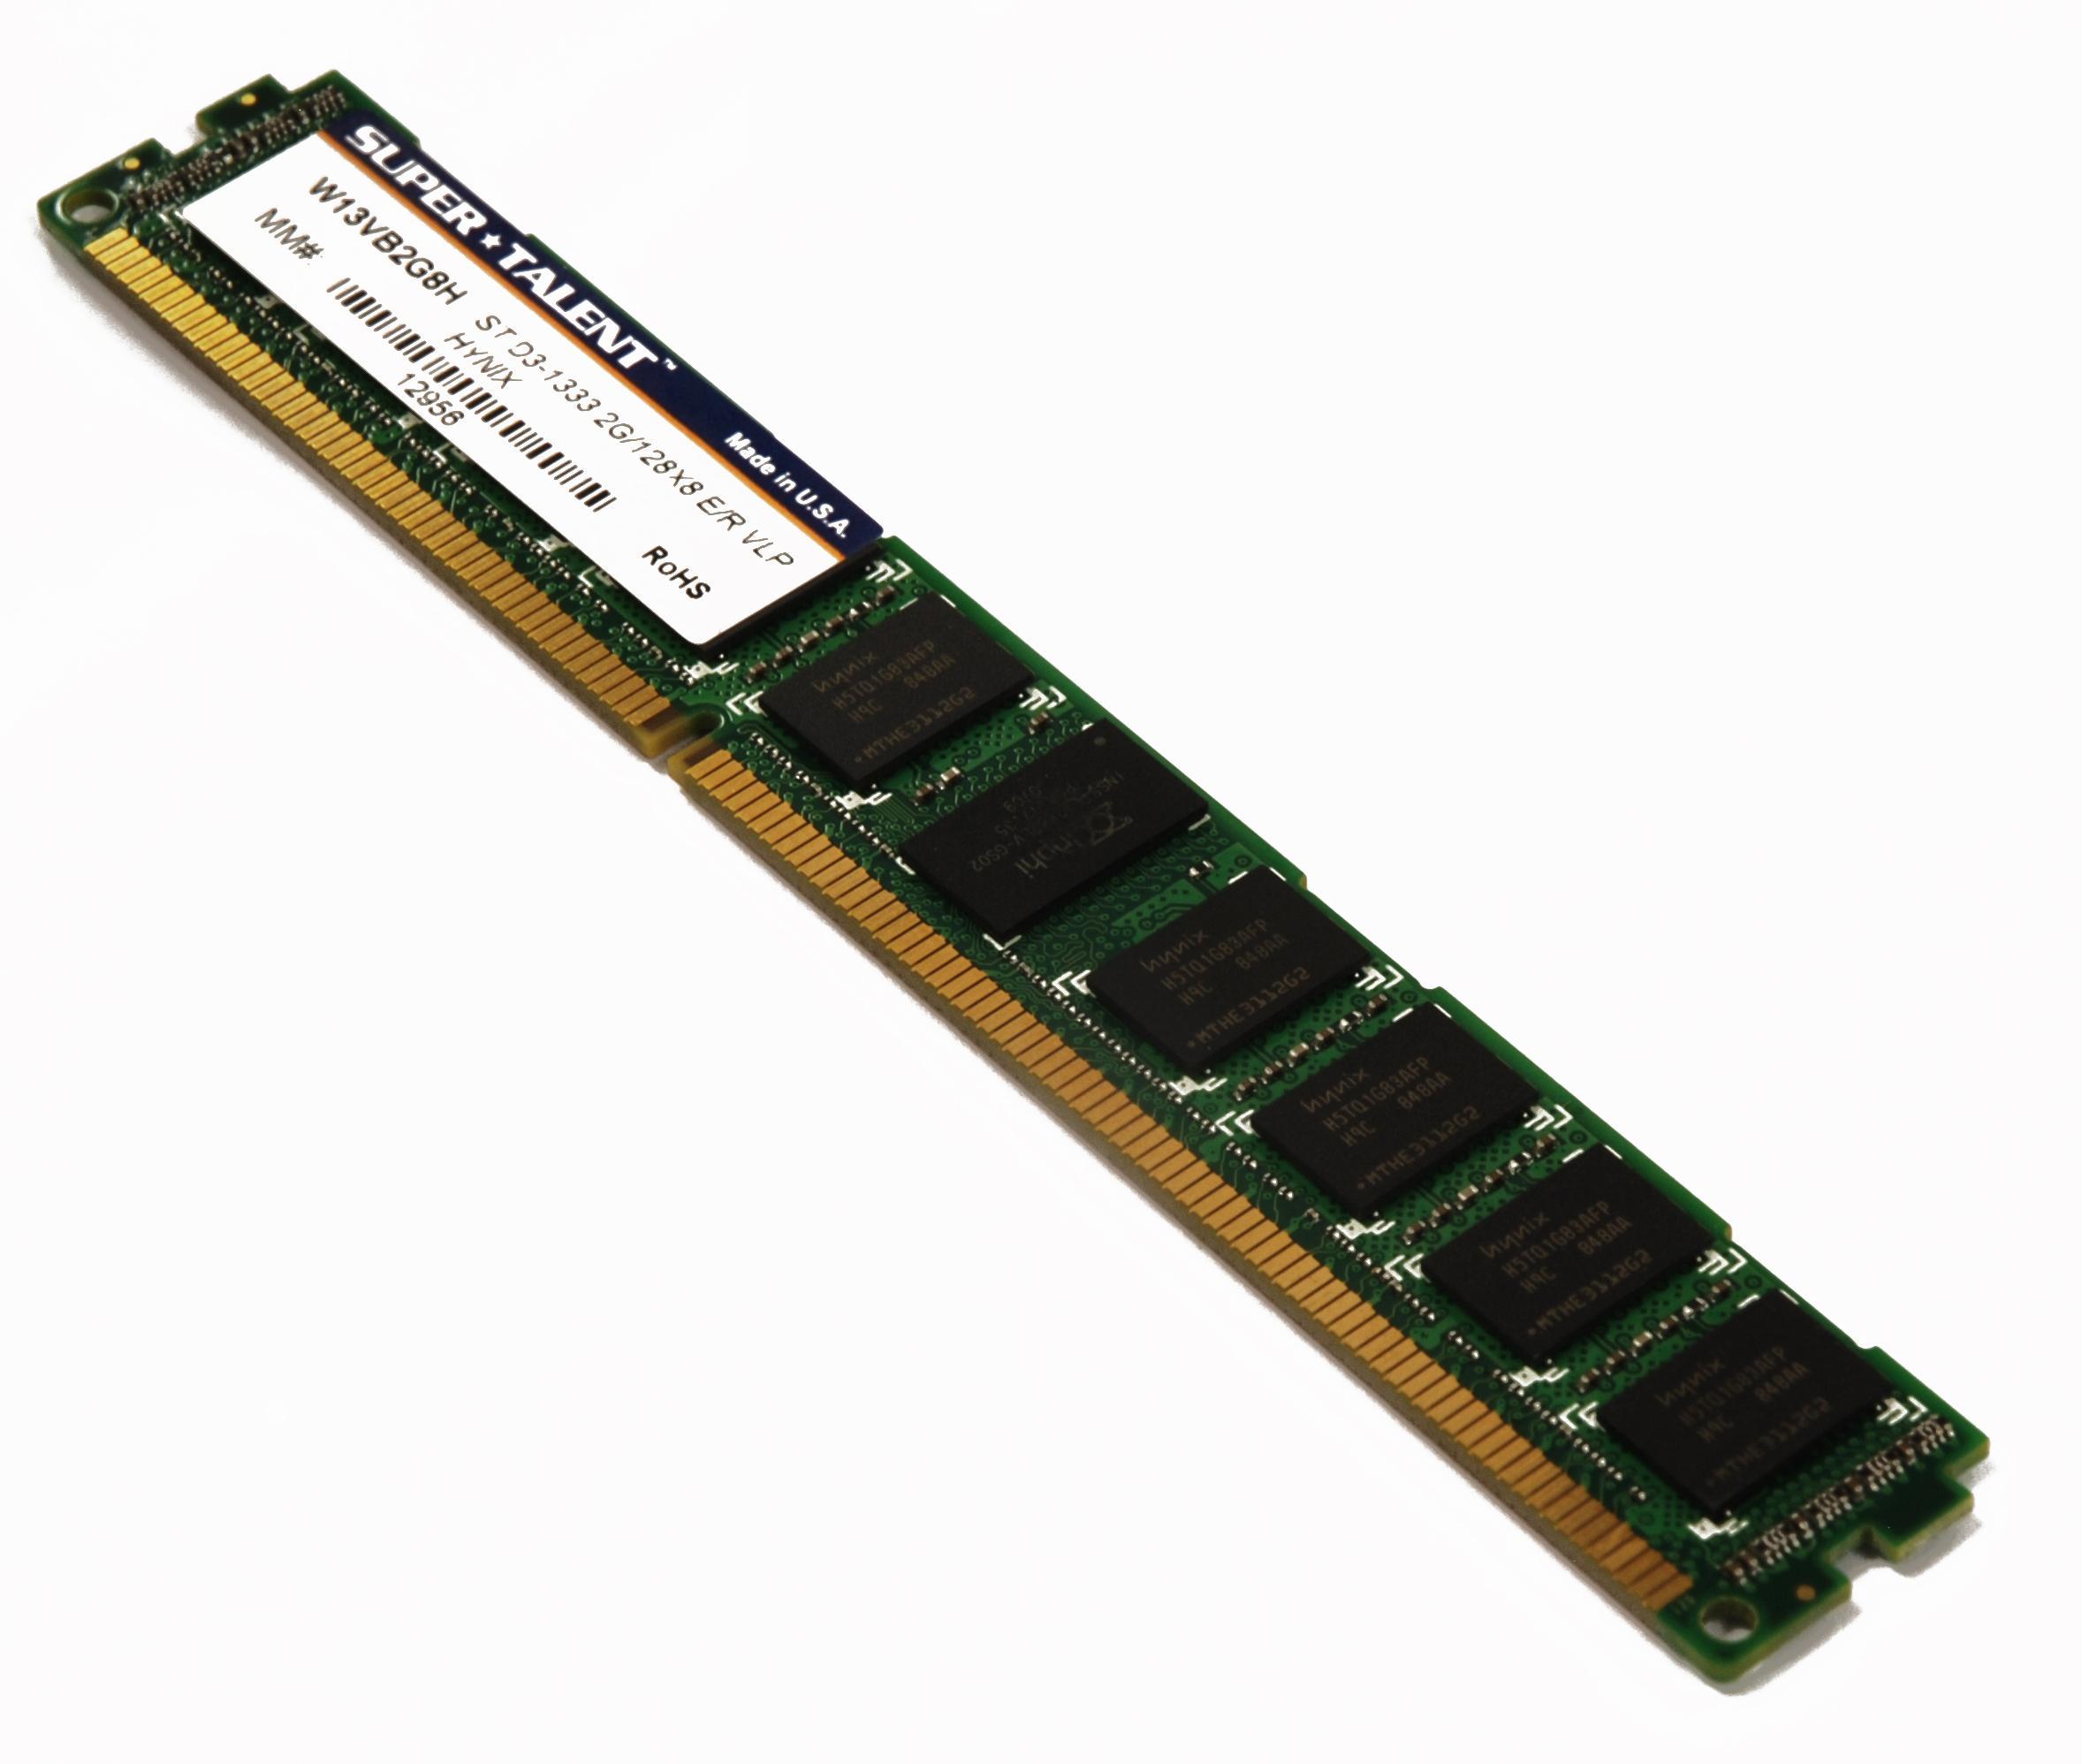 Серверная оперативная память ddr3. Низкопрофильная память ddr3. Оперативная память DDR rimm DIMM. Радиатор для серверной памяти ddr3. Nonvolatile registered DIMM.